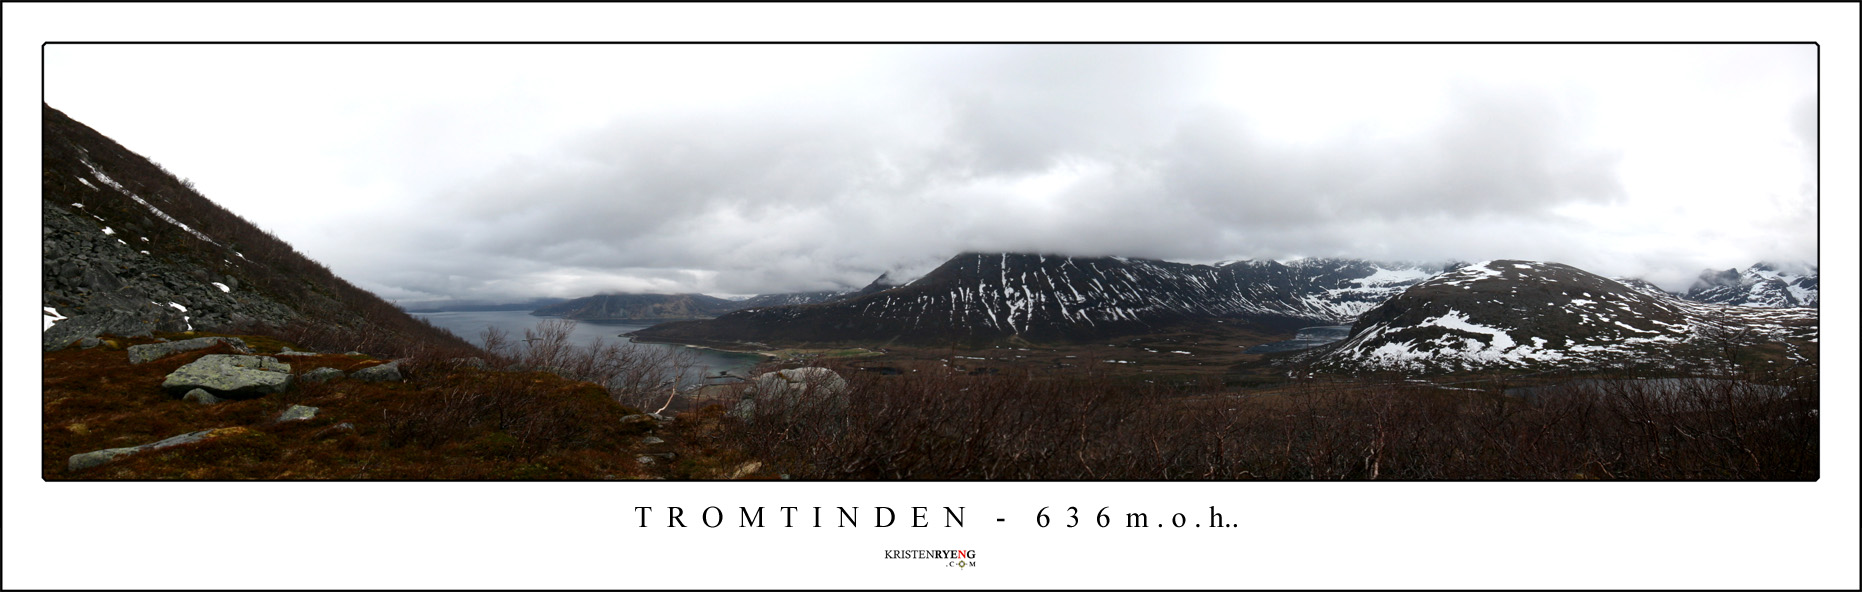 Panorama-Tromtinden2.jpg - Utsikt fra Tromtinden - 636 moh (Kvaløya)